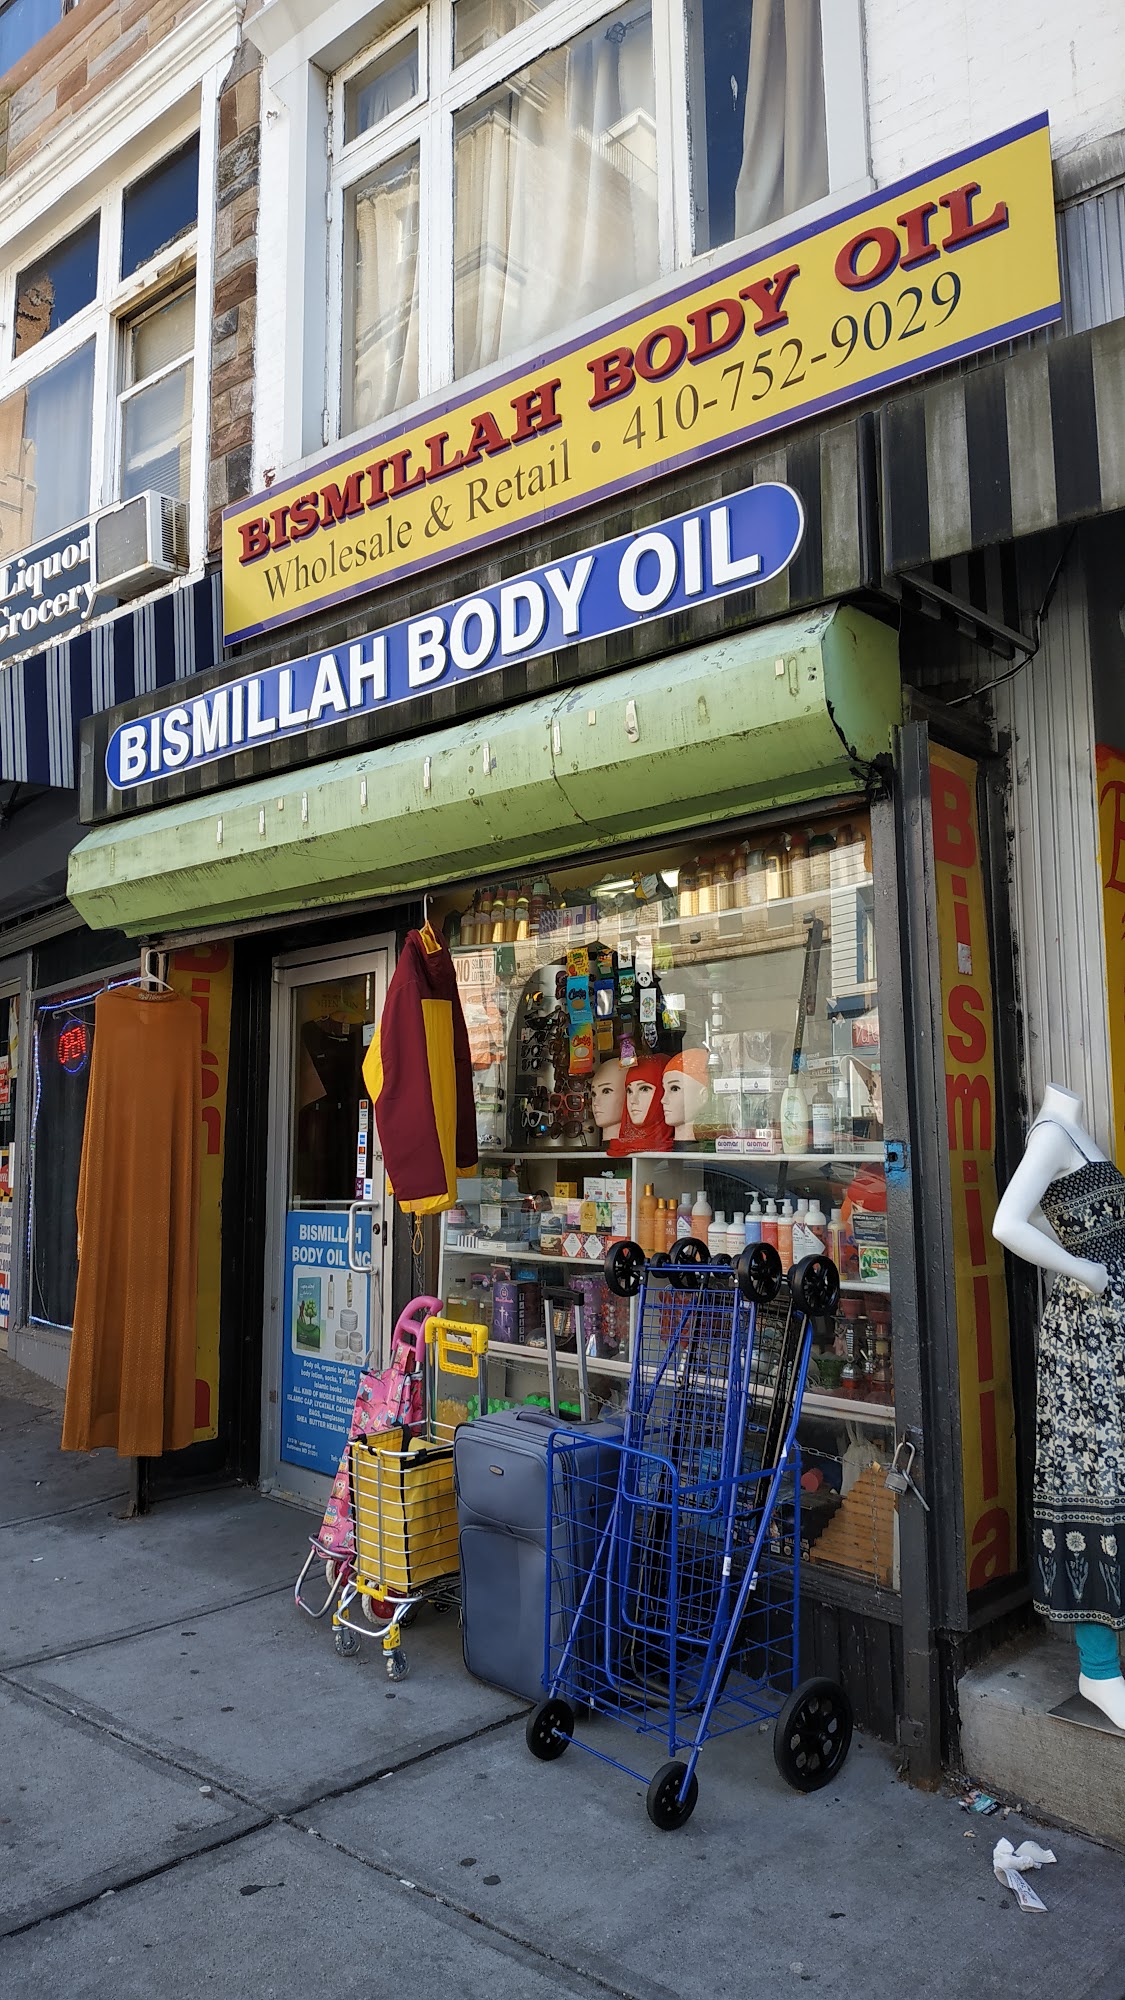 Bismillah Body Oils